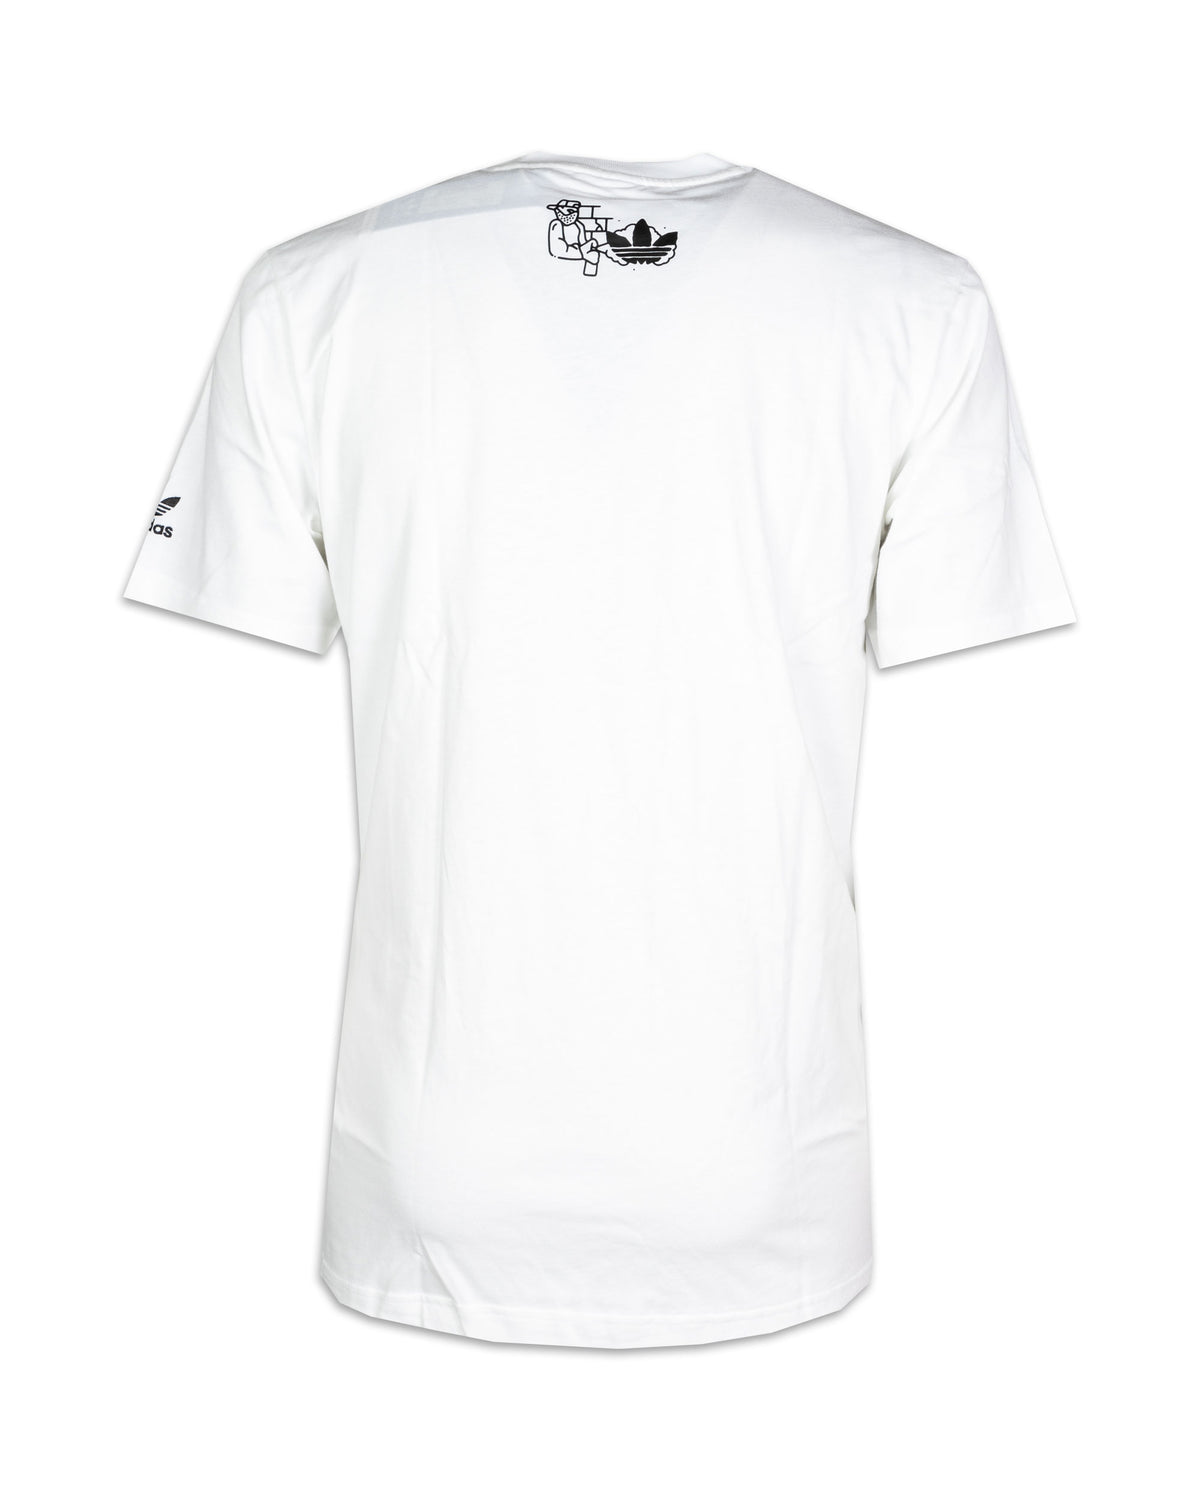 T-Shirt Uomo Adidas Fuzi Bianca